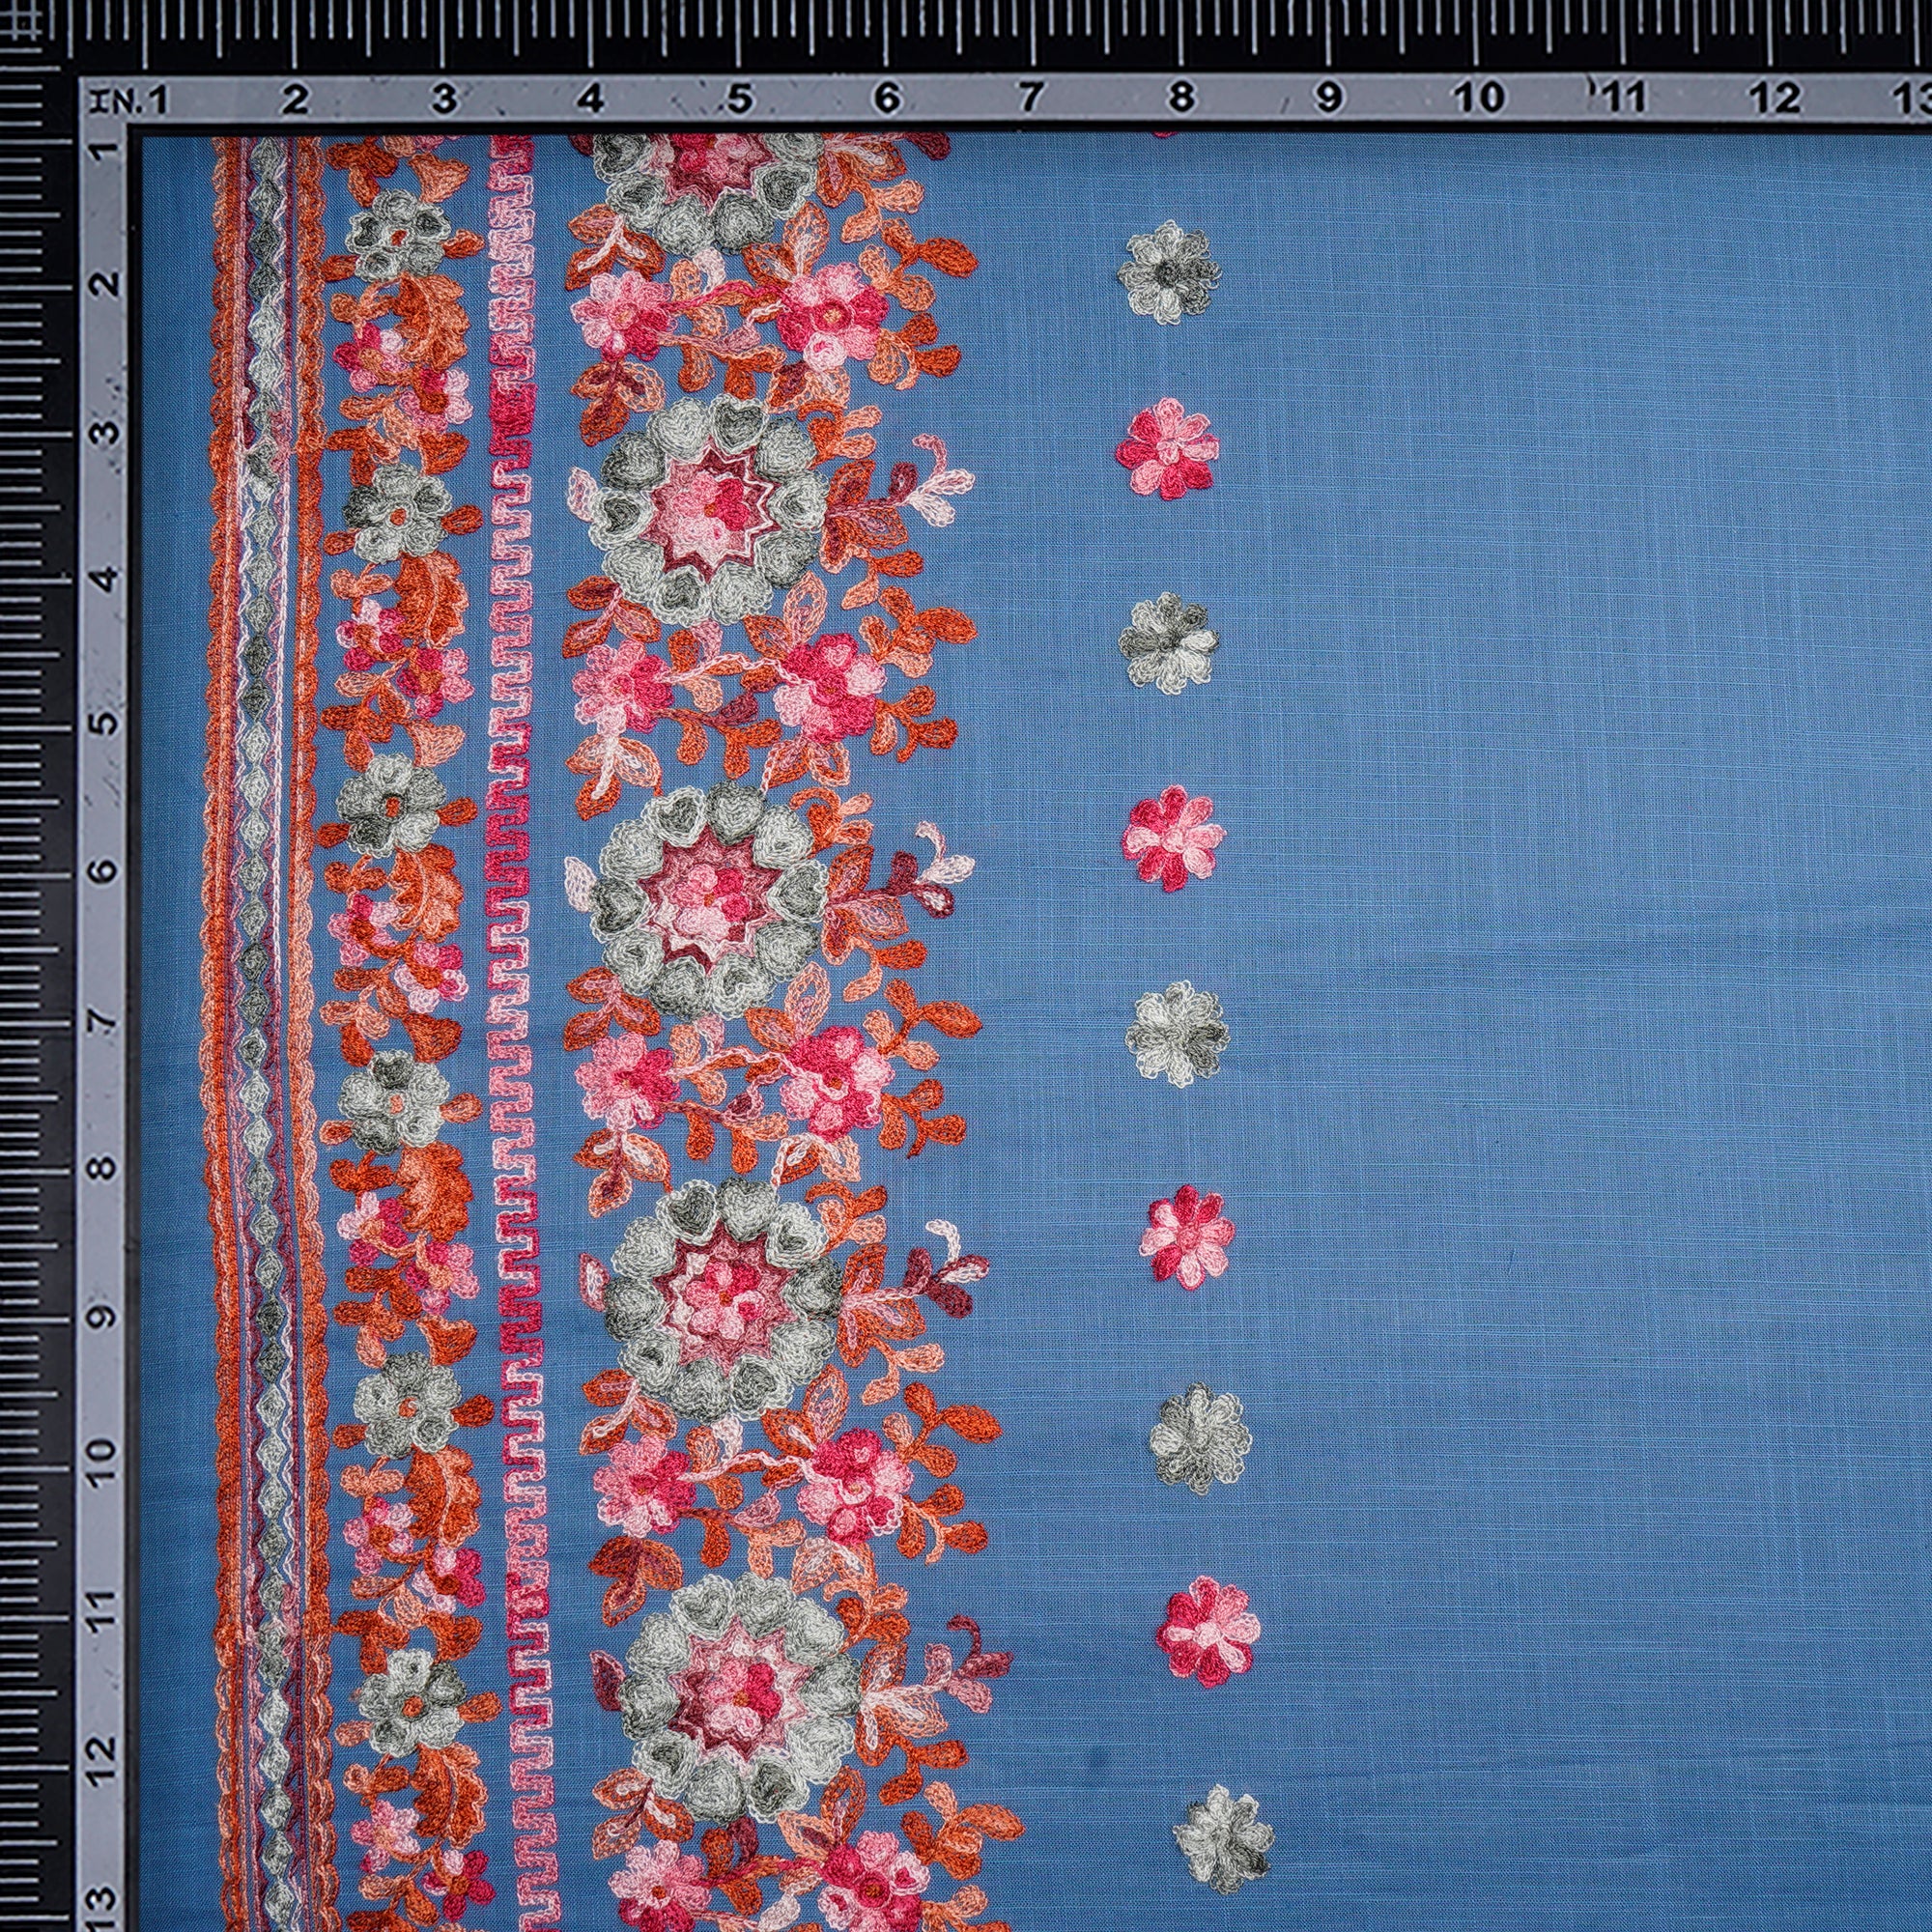 Multi Color Embroidered Cotton Slub Fabric